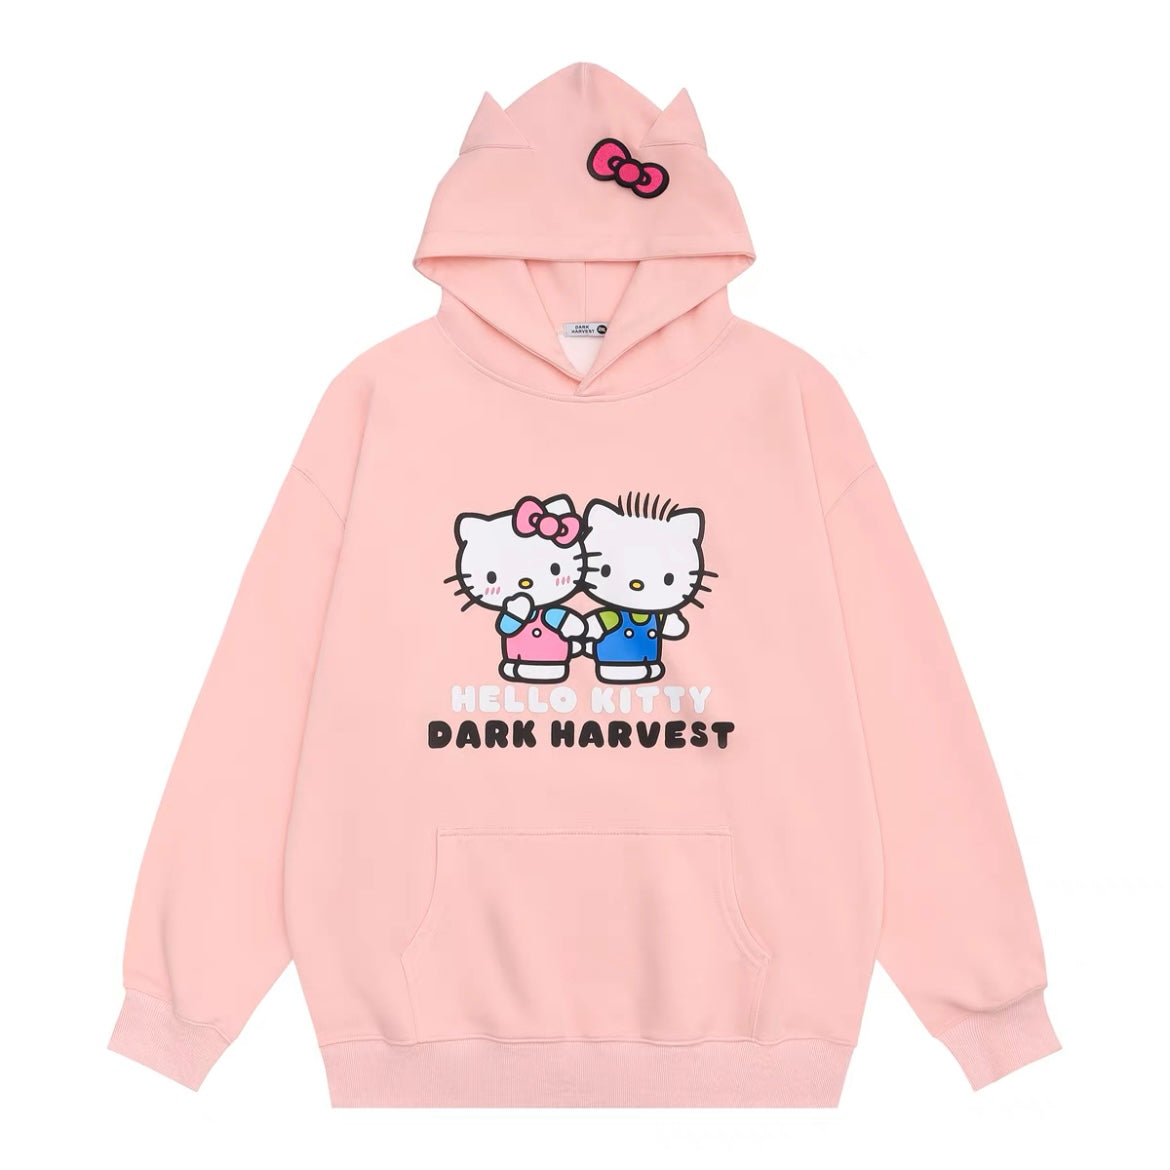 Hellokitty Hoodie Kawaii Pullover Cute Hooded Sweatshirt